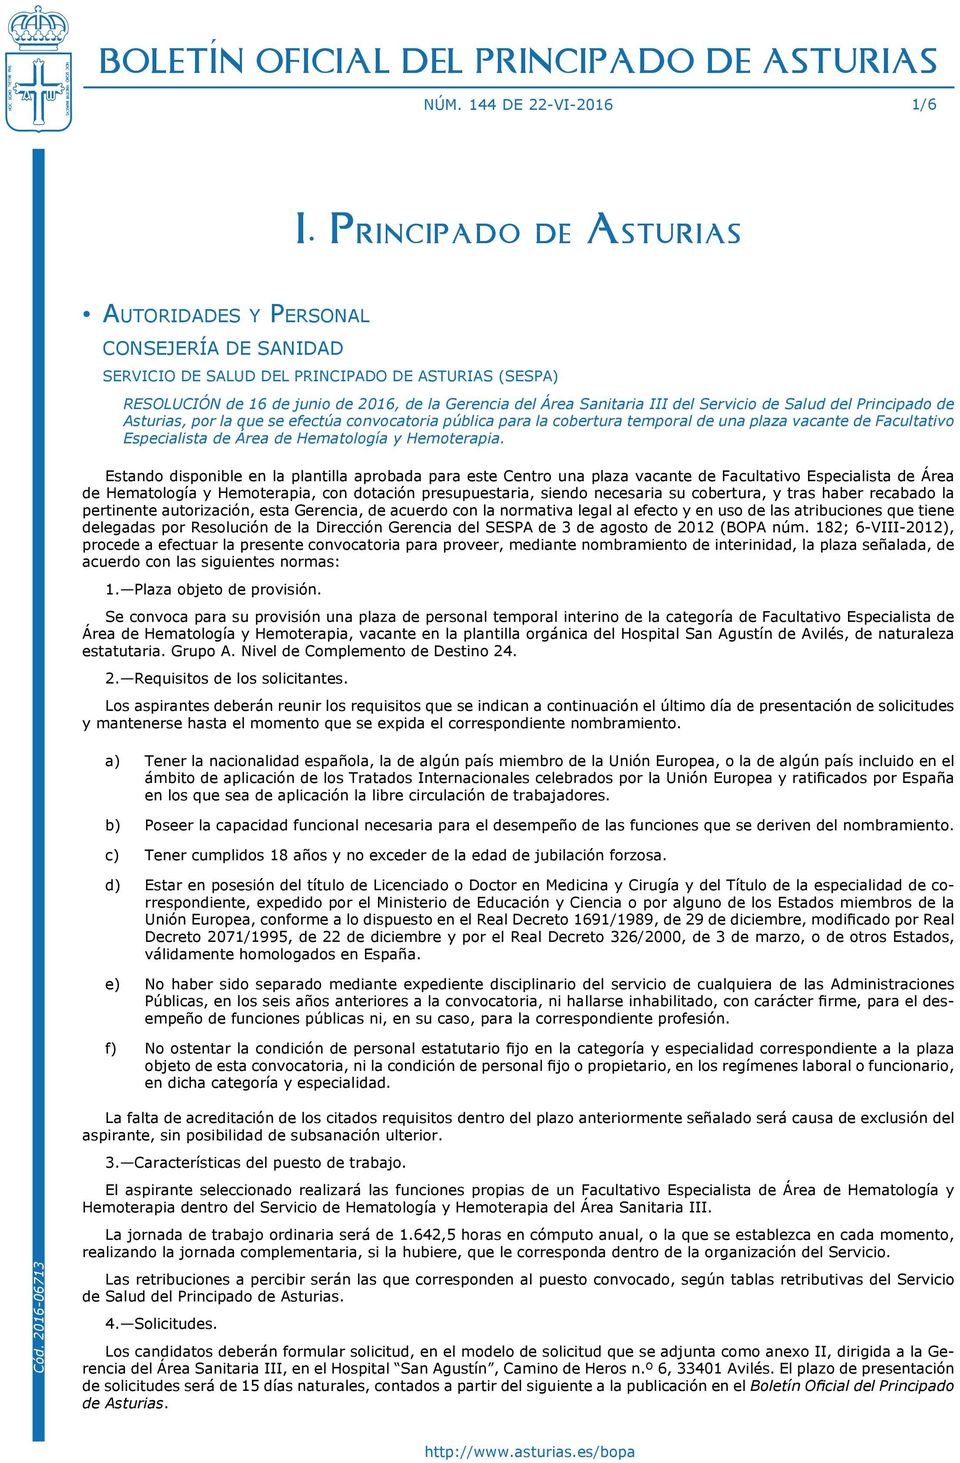 Sanitaria III del Servicio de Salud del Principado de Asturias, por la que se efectúa convocatoria pública para la cobertura temporal de una plaza vacante de Facultativo Especialista de Área de